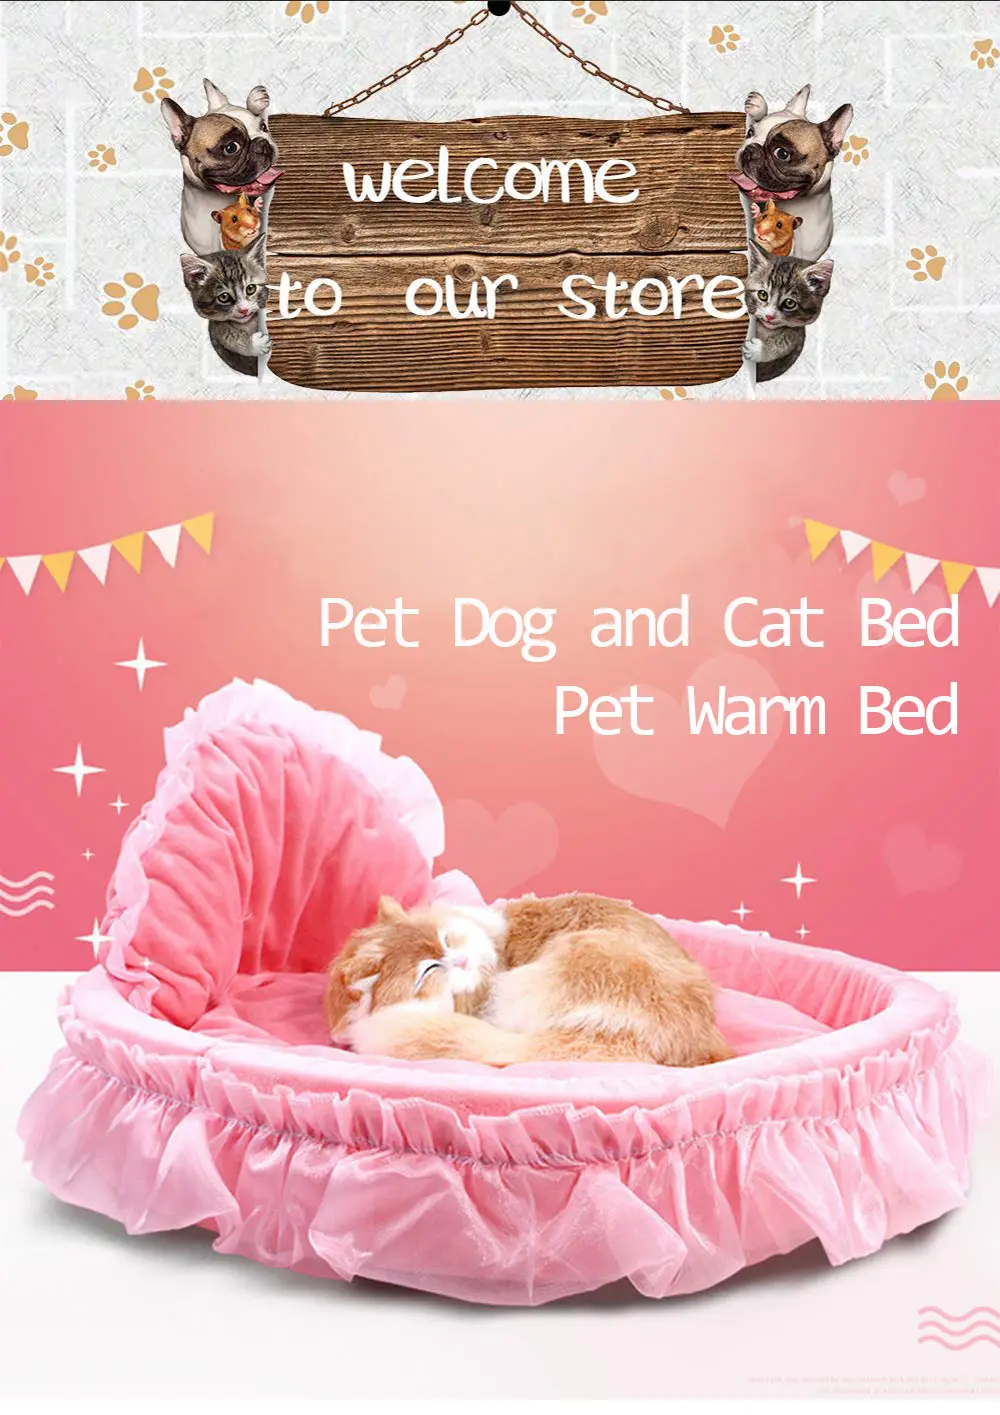 Мягкий собачий и кошачий питомец кровать для питомца кошка щенок Принцесса Луки Кружева Сердце элегантная Милая кровать будка для питомца теплая кровать для домашних животных